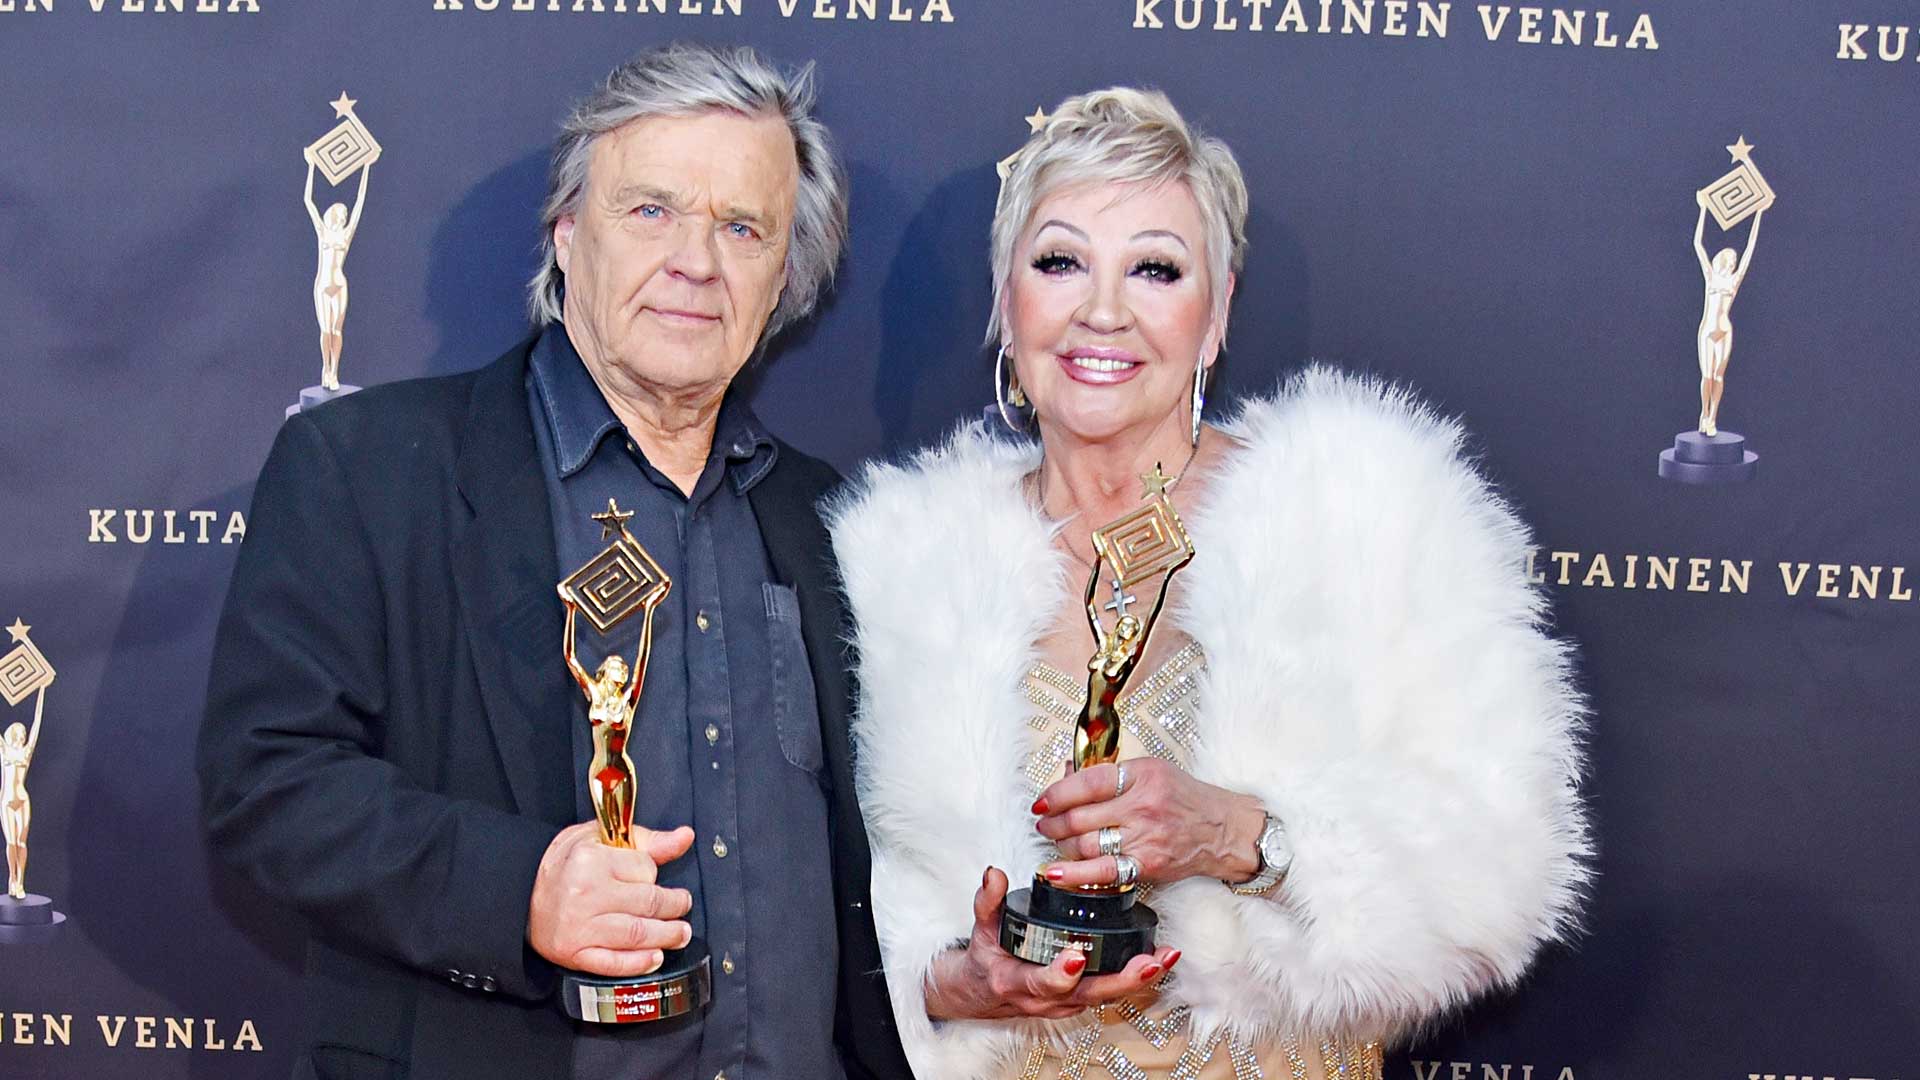 Näyttelijä Hannele Lauri ja ohjaaja-käsikirjoittaja Matti Ijäs saivat elämäntyöpalkinnot.